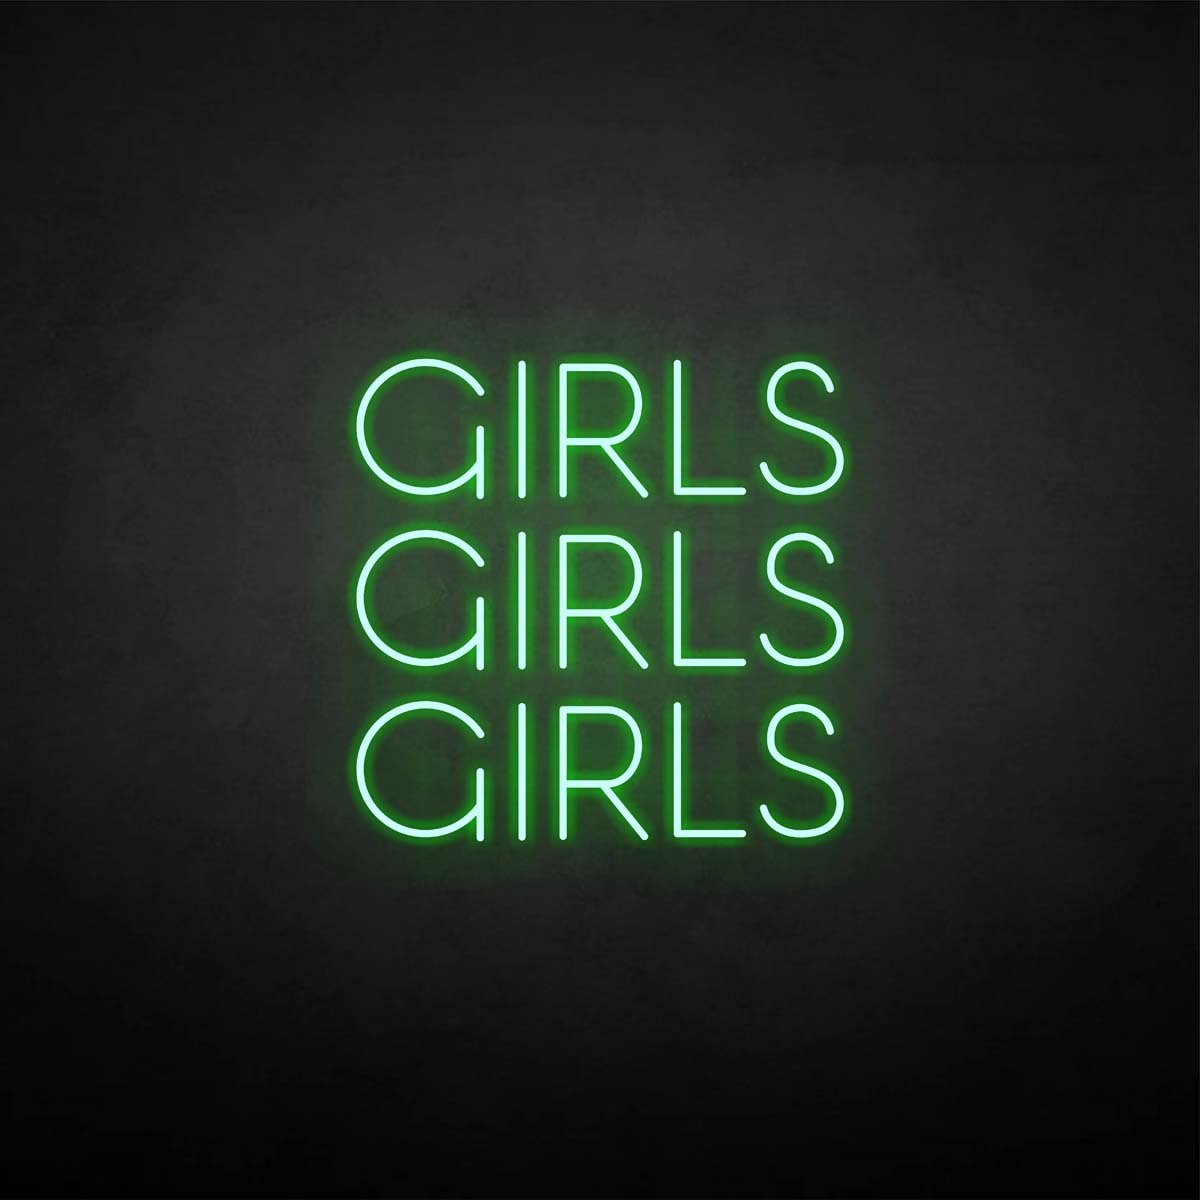 Leuchtreklame "Mädchen, Mädchen, Mädchen".